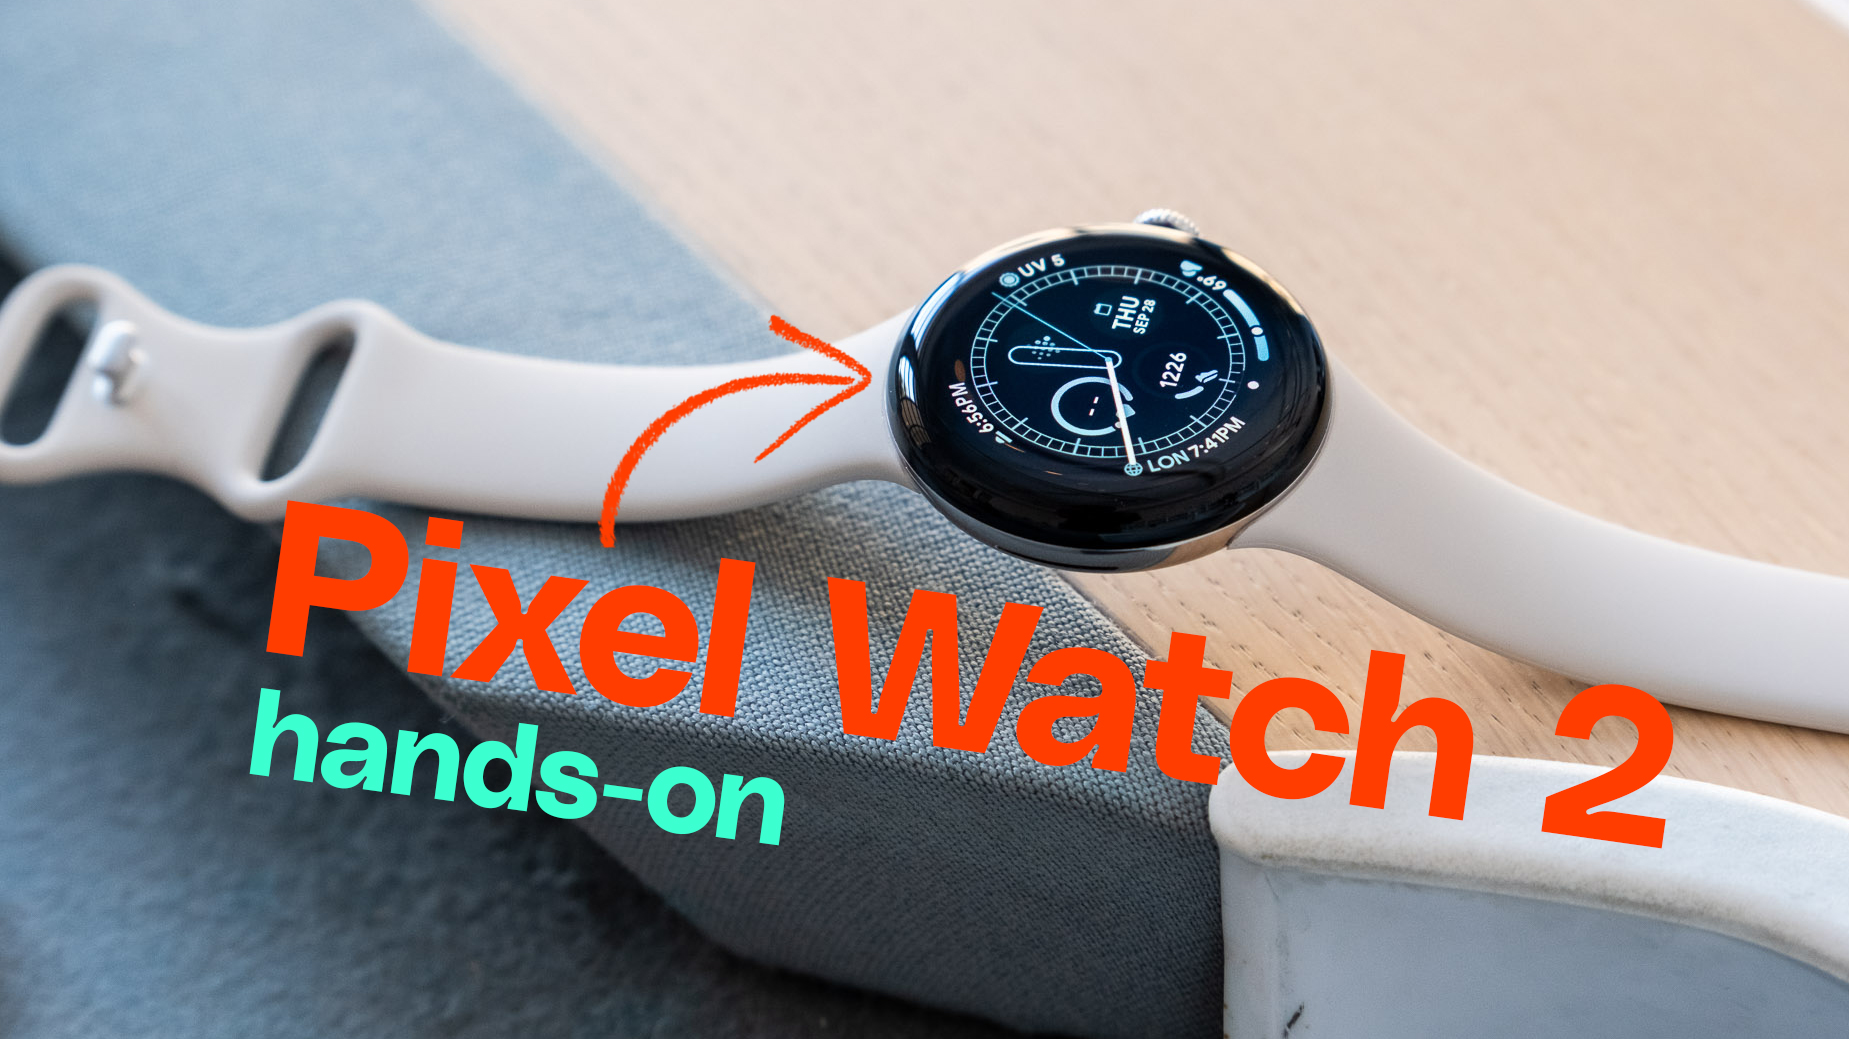 Google Pixel Watch 2 hands-on